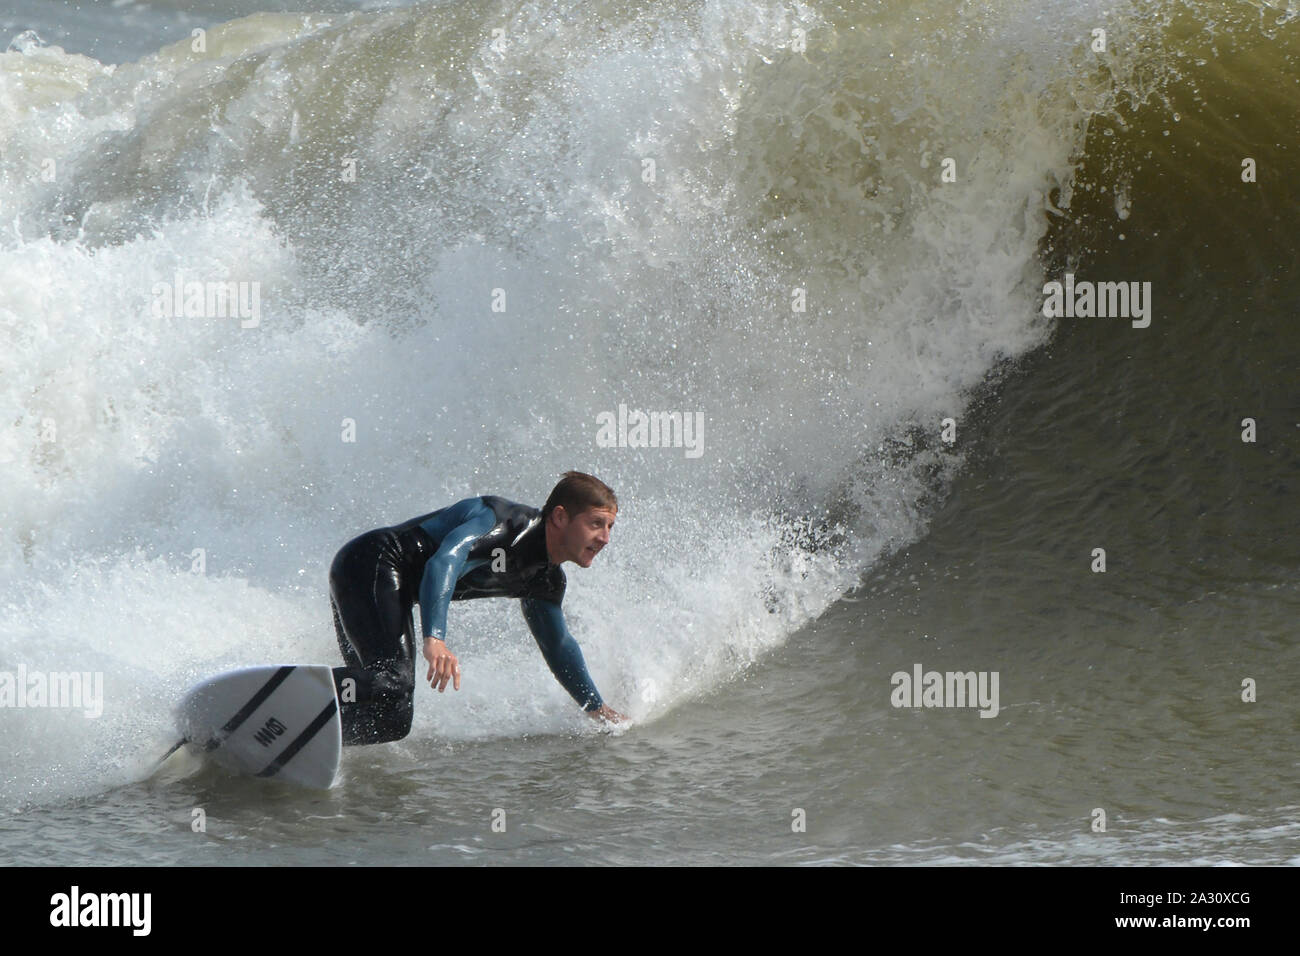 Mano tirati in onda un surfer angoli la sua tavola da surf e il corpo nella sua volta al di fuori del lato inferiore della forma d'onda, temporizzazione il suo turno per impostare la sua cavalcata Foto Stock